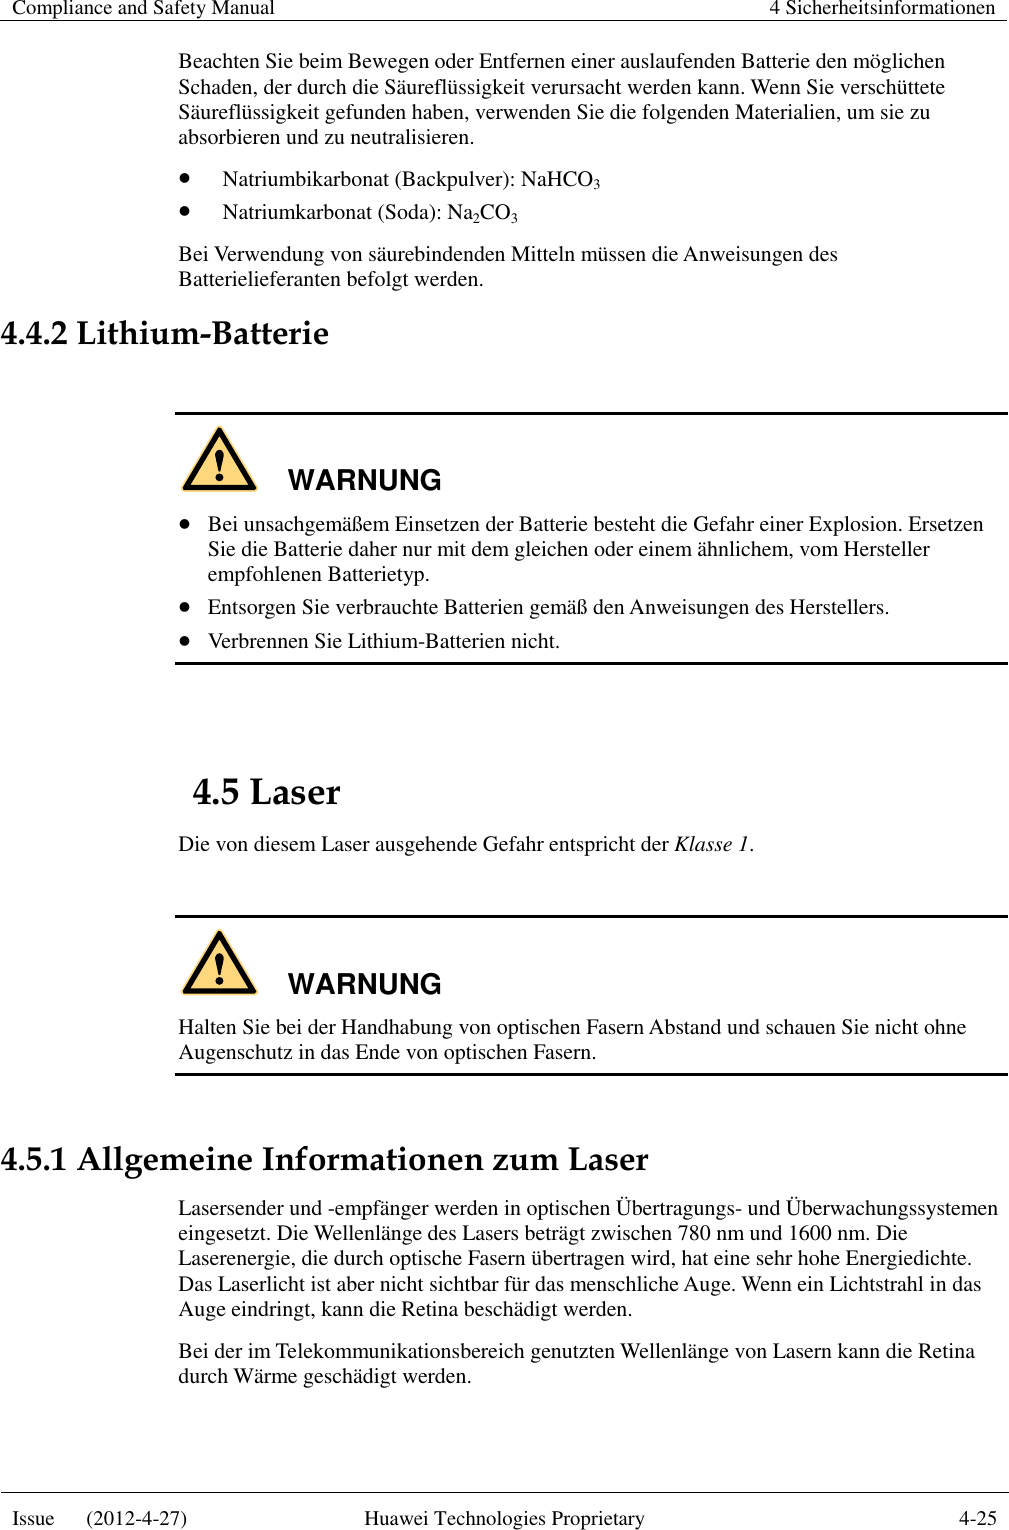 Compliance and Safety Manual 4 Sicherheitsinformationen  Issue      (2012-4-27) Huawei Technologies Proprietary 4-25  Beachten Sie beim Bewegen oder Entfernen einer auslaufenden Batterie den möglichen Schaden, der durch die Säureflüssigkeit verursacht werden kann. Wenn Sie verschüttete Säureflüssigkeit gefunden haben, verwenden Sie die folgenden Materialien, um sie zu absorbieren und zu neutralisieren.  Natriumbikarbonat (Backpulver): NaHCO3  Natriumkarbonat (Soda): Na2CO3 Bei Verwendung von säurebindenden Mitteln müssen die Anweisungen des Batterielieferanten befolgt werden. 4.4.2 Lithium-Batterie  WARNUNG  Bei unsachgemäßem Einsetzen der Batterie besteht die Gefahr einer Explosion. Ersetzen Sie die Batterie daher nur mit dem gleichen oder einem ähnlichem, vom Hersteller empfohlenen Batterietyp.  Entsorgen Sie verbrauchte Batterien gemäß den Anweisungen des Herstellers.  Verbrennen Sie Lithium-Batterien nicht.  4.5 Laser Die von diesem Laser ausgehende Gefahr entspricht der Klasse 1.  WARNUNG Halten Sie bei der Handhabung von optischen Fasern Abstand und schauen Sie nicht ohne Augenschutz in das Ende von optischen Fasern.  4.5.1 Allgemeine Informationen zum Laser Lasersender und -empfänger werden in optischen Übertragungs- und Überwachungssystemen eingesetzt. Die Wellenlänge des Lasers beträgt zwischen 780 nm und 1600 nm. Die Laserenergie, die durch optische Fasern übertragen wird, hat eine sehr hohe Energiedichte. Das Laserlicht ist aber nicht sichtbar für das menschliche Auge. Wenn ein Lichtstrahl in das Auge eindringt, kann die Retina beschädigt werden. Bei der im Telekommunikationsbereich genutzten Wellenlänge von Lasern kann die Retina durch Wärme geschädigt werden. 